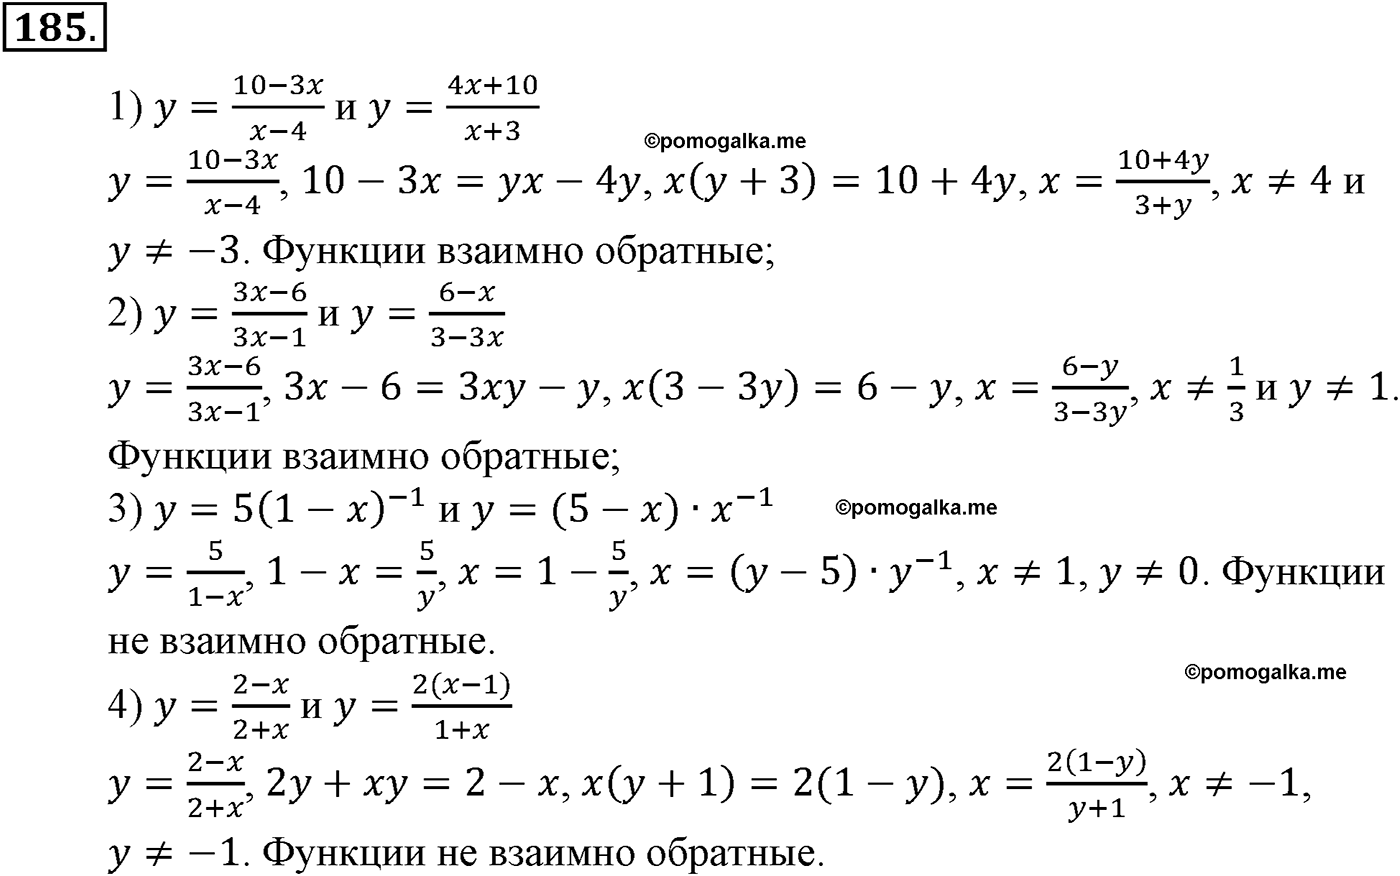 разбор задачи №185 по алгебре за 10-11 класс из учебника Алимова, Колягина